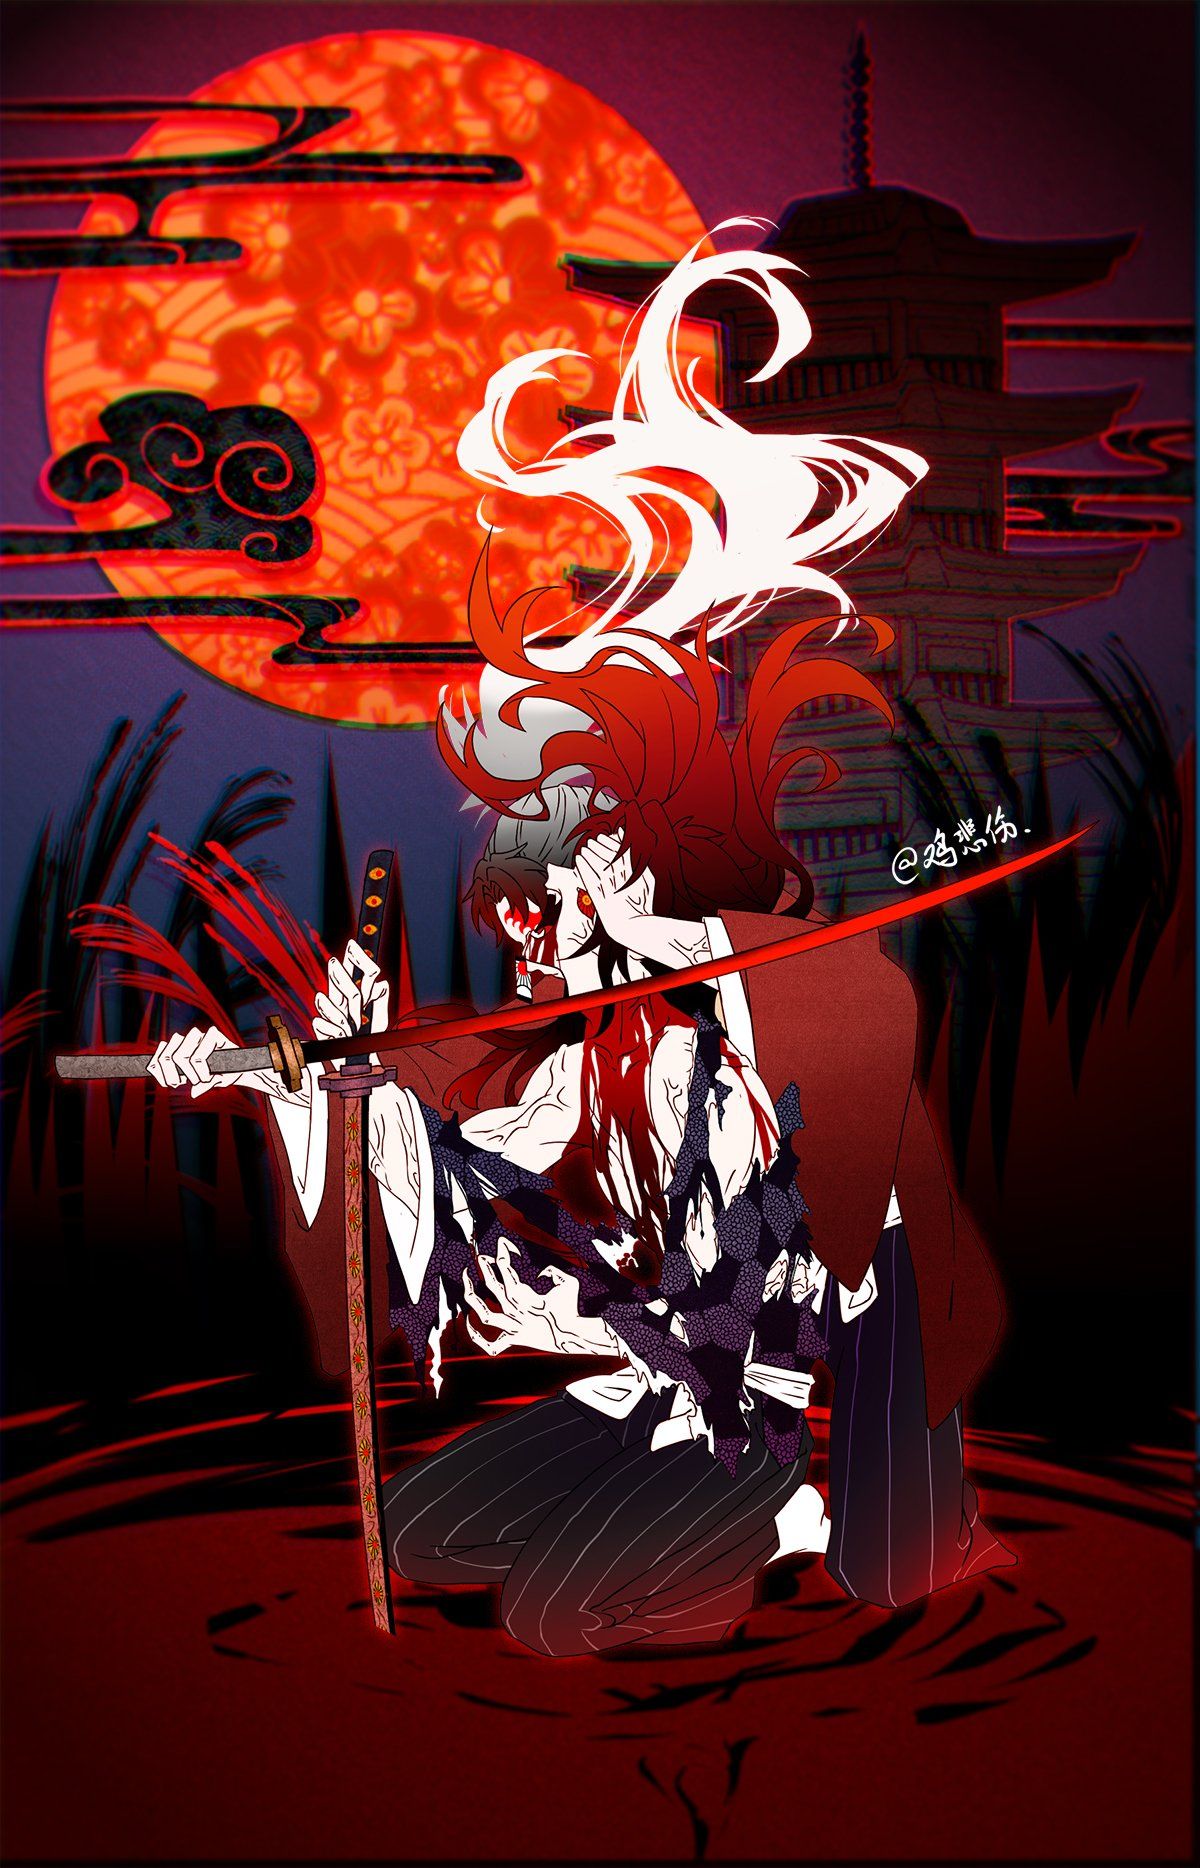 Kimetsu no yaiba. Anime demon, Demon slayer yoriichi wallpaper, Anime background